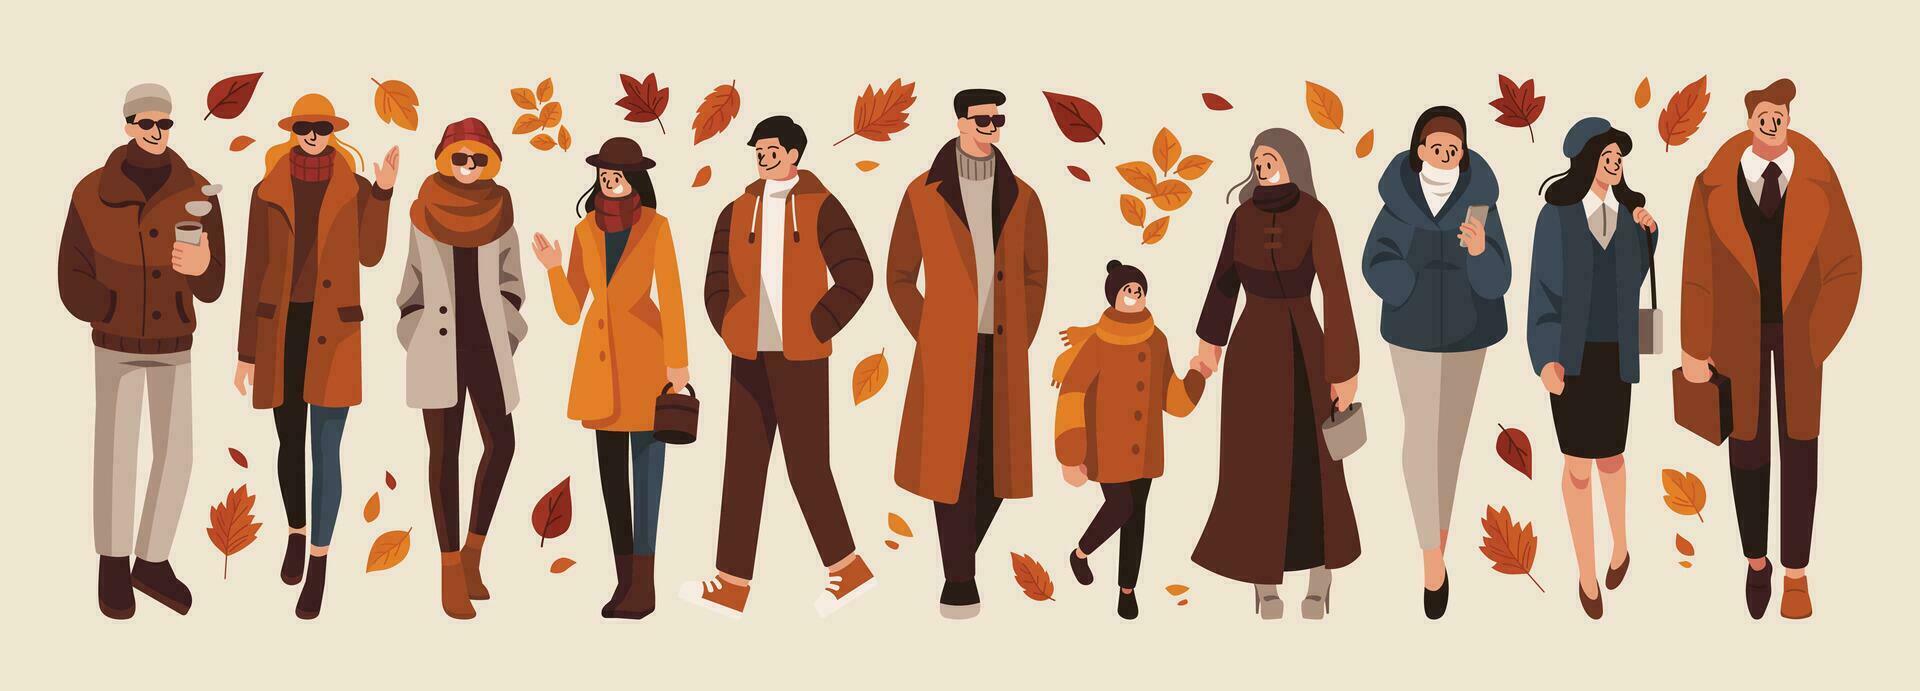 mensen in herfst mode met herfst bladeren verzameling vector illustratie